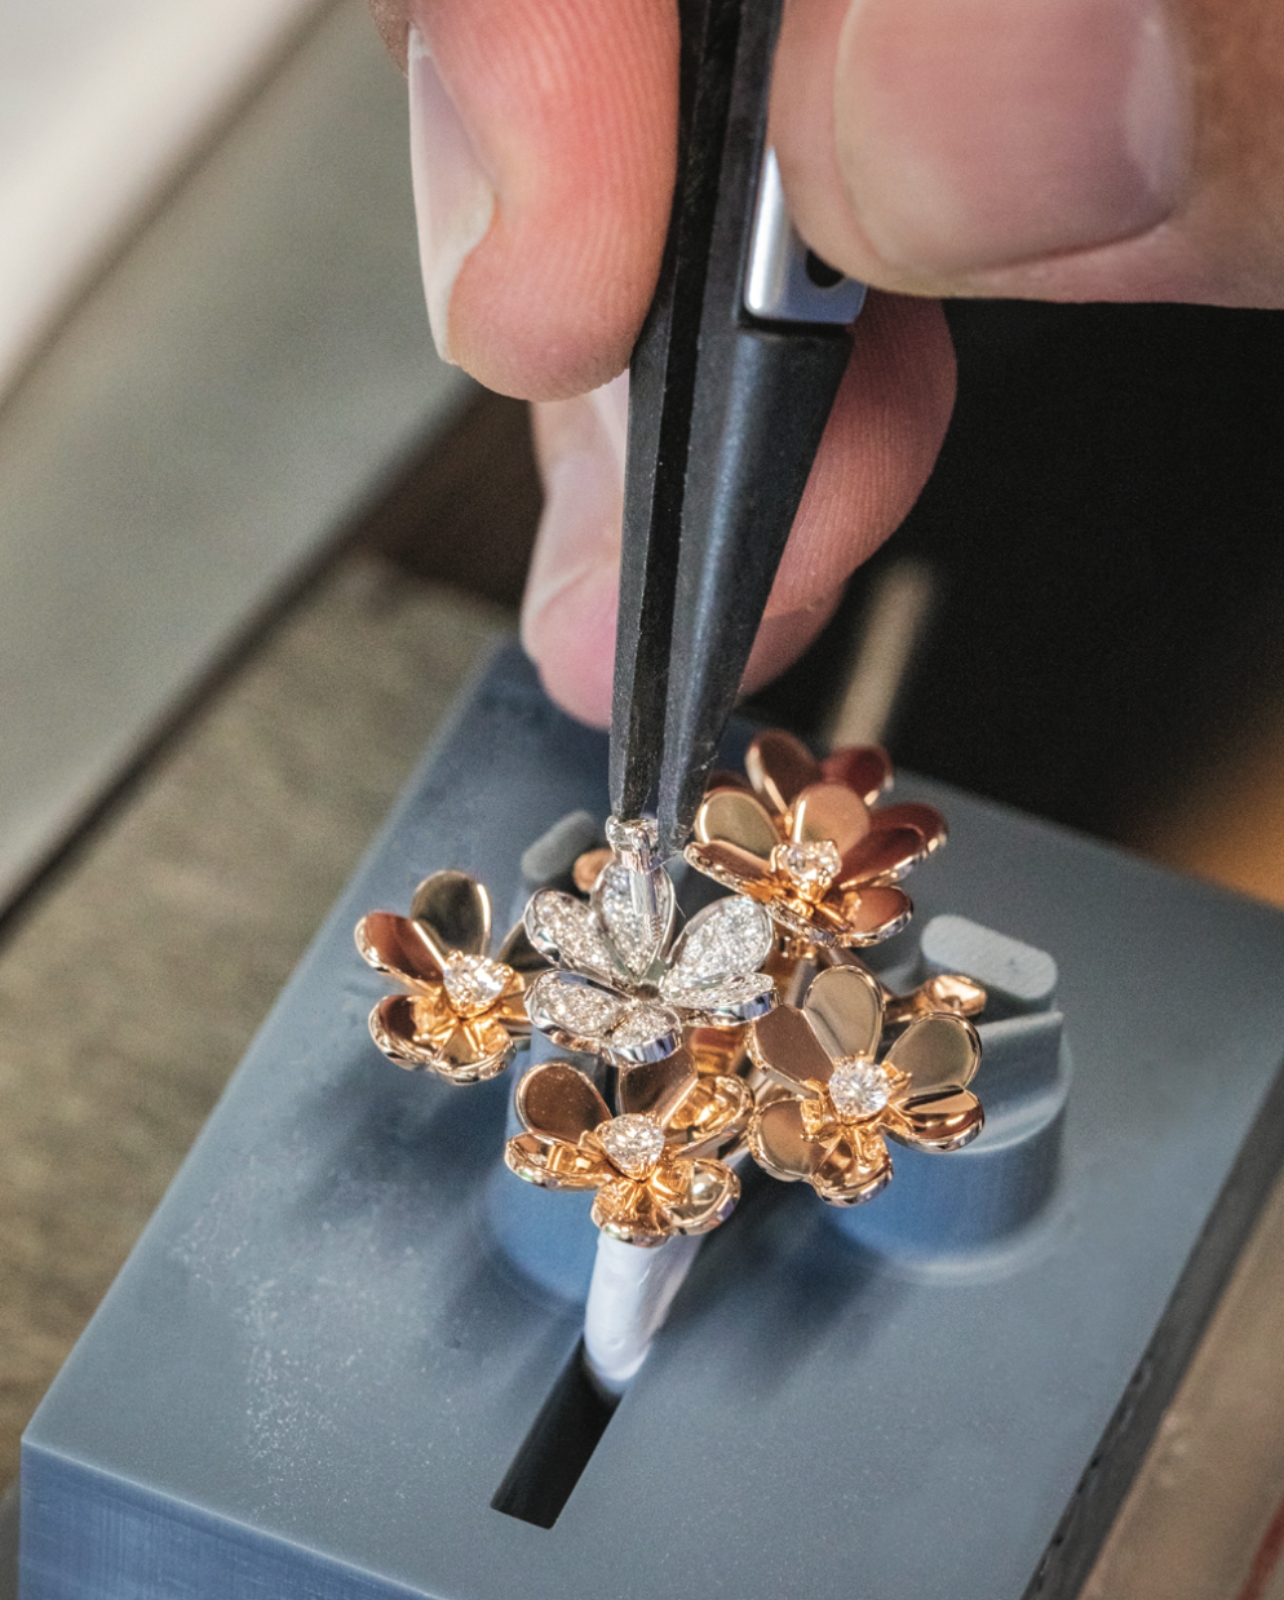 Van Cleef & Arpels jeweler setting diamond in ring